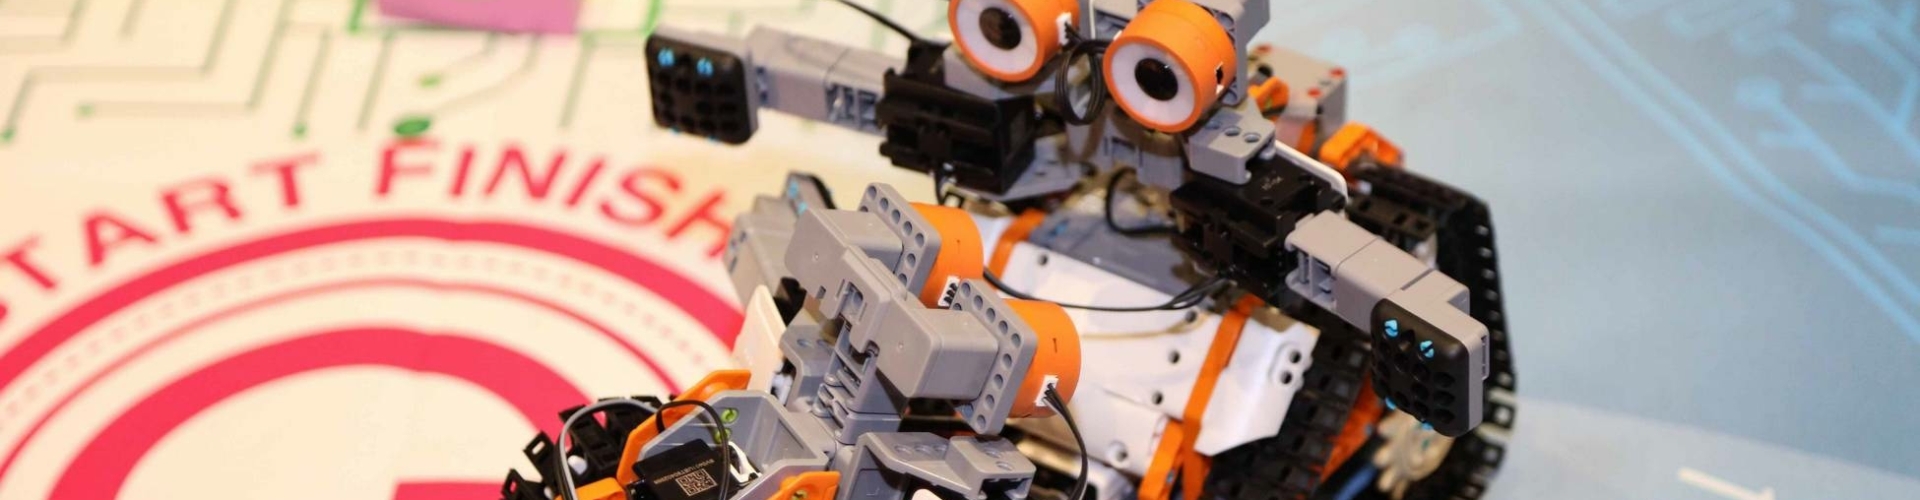 Leuke technische activiteit waarbij deelnemers robots bouwen